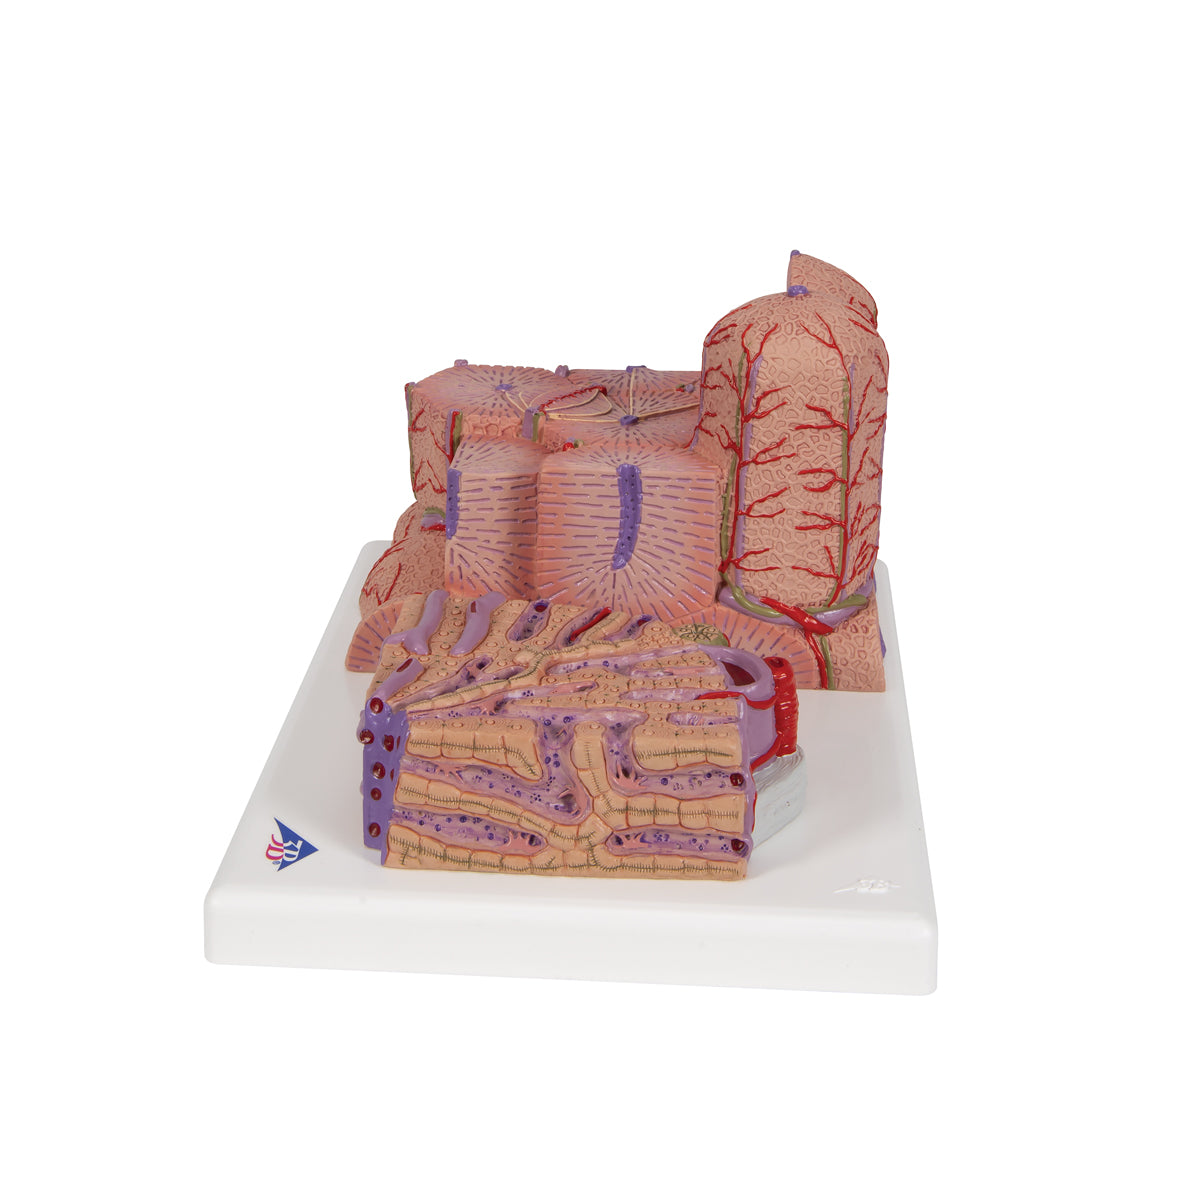 Detaljerad modell av levervävnaden och blodkärlen i ett mikroskopiskt perspektiv